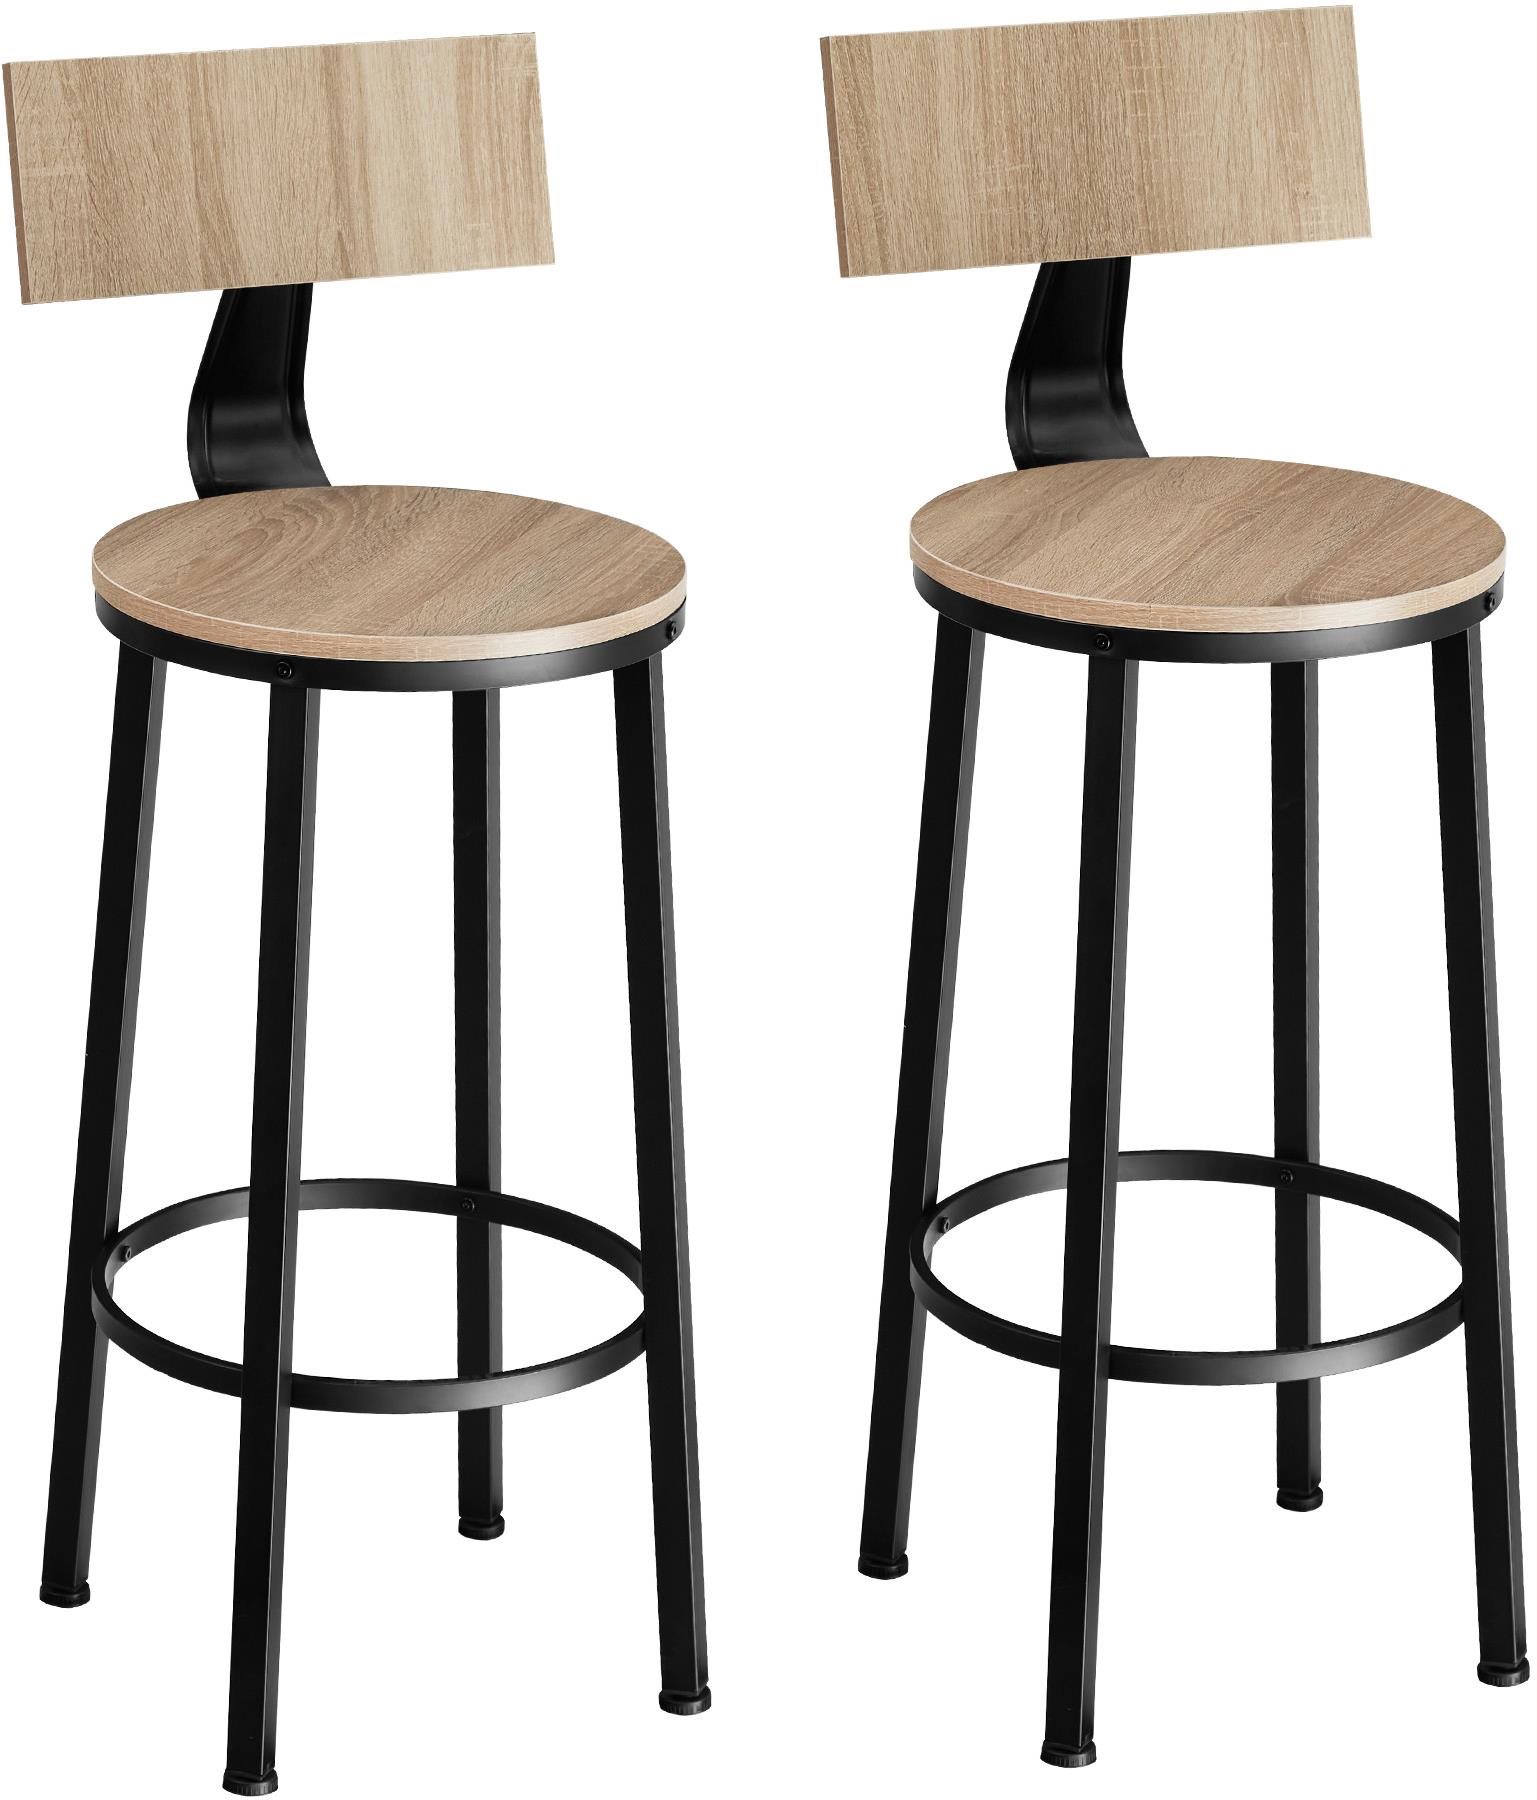 2 Barové stoličky Poole Industrial svetlé drevo, dub Sonoma